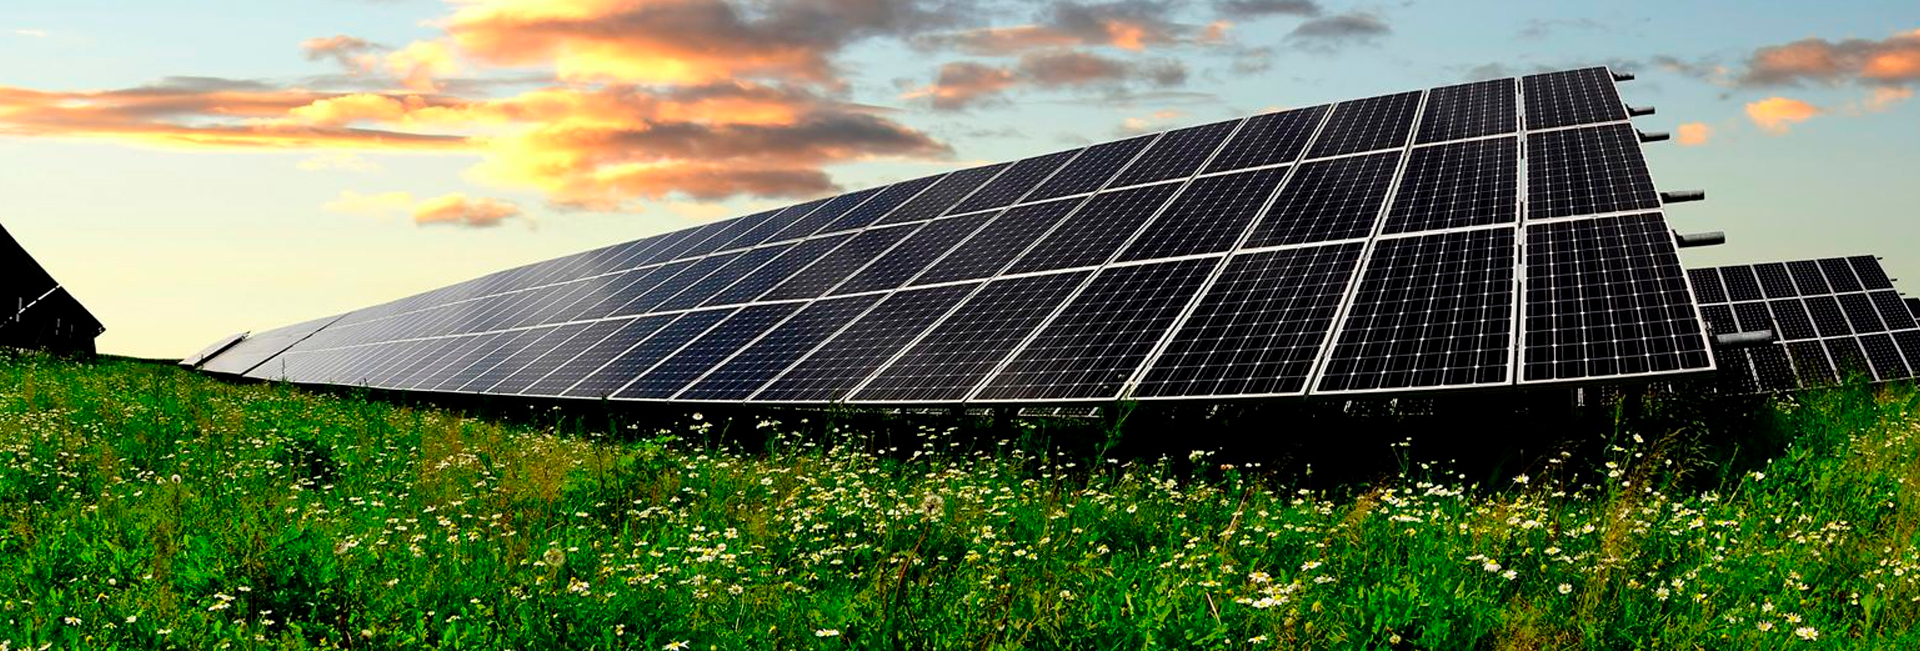 ¿Qué es una granja solar?